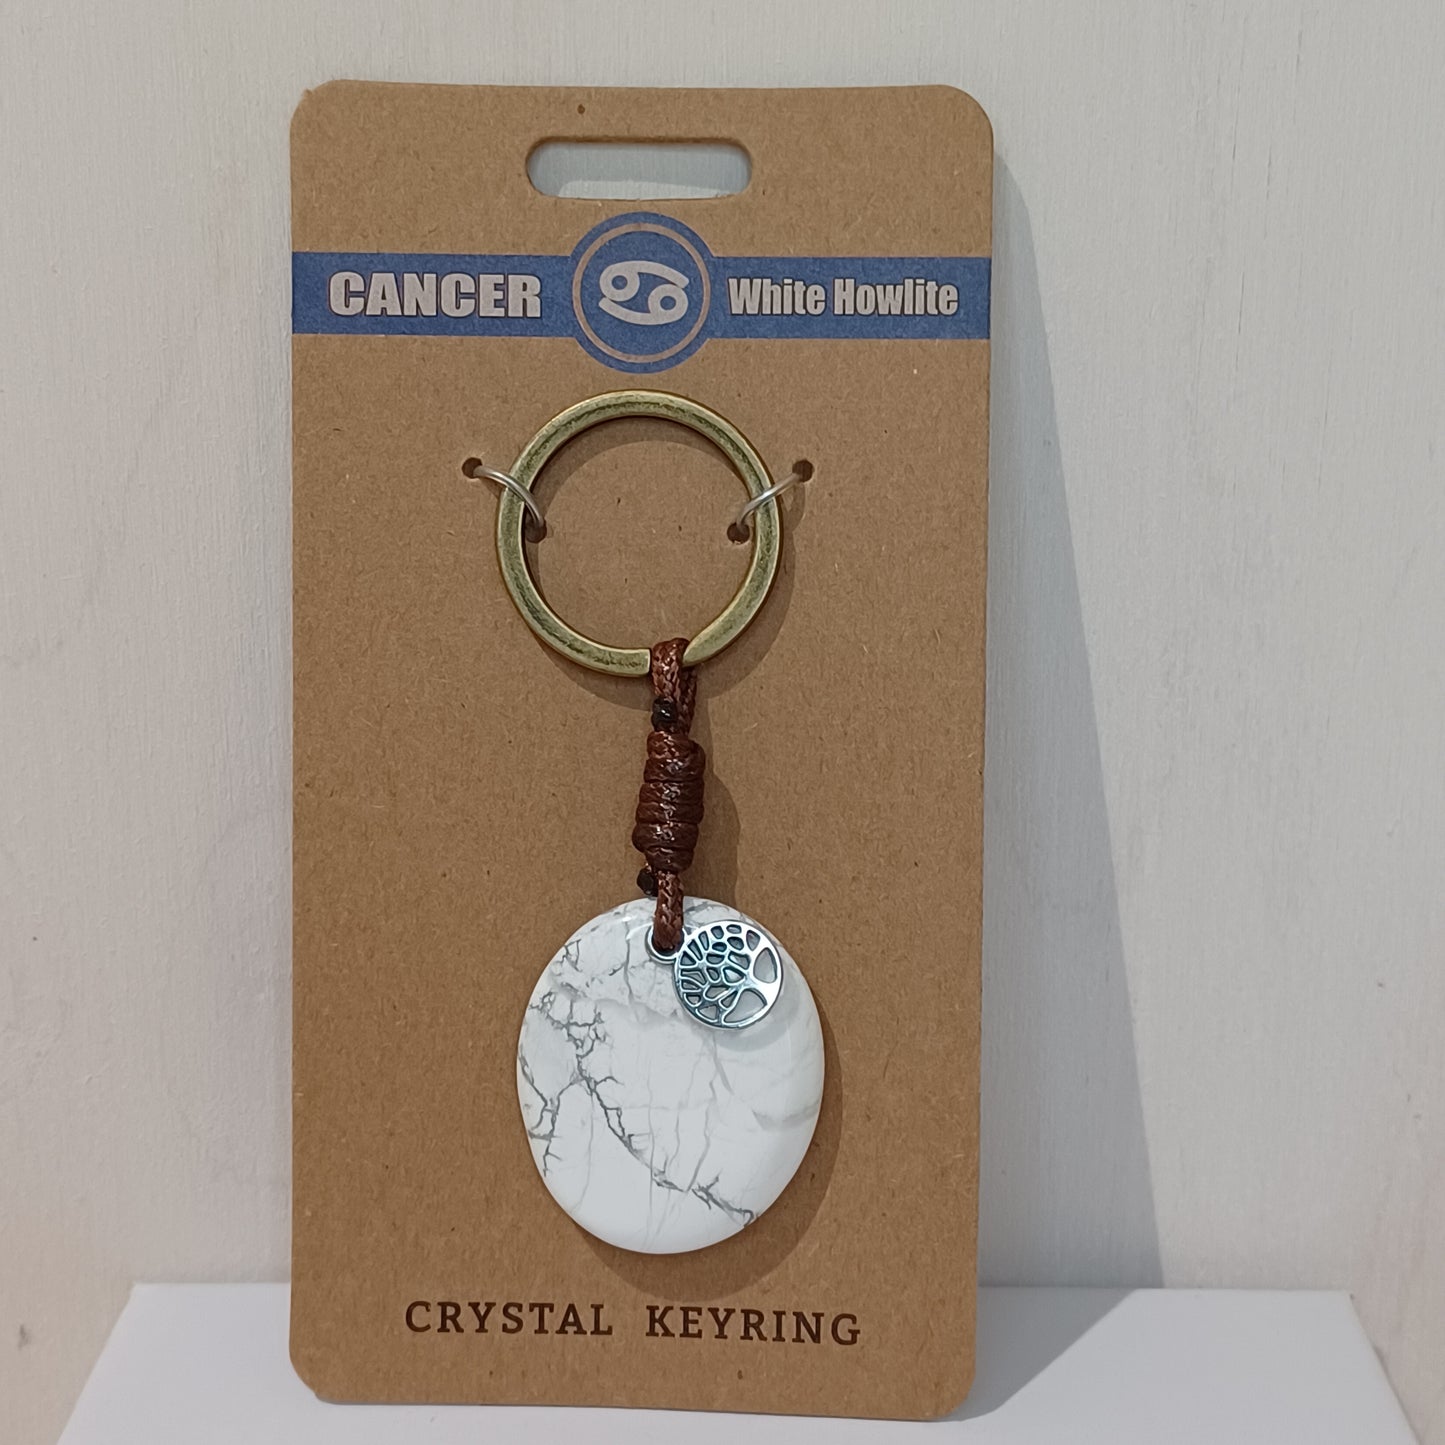 Crystal Keyring - Cancer White Howlite